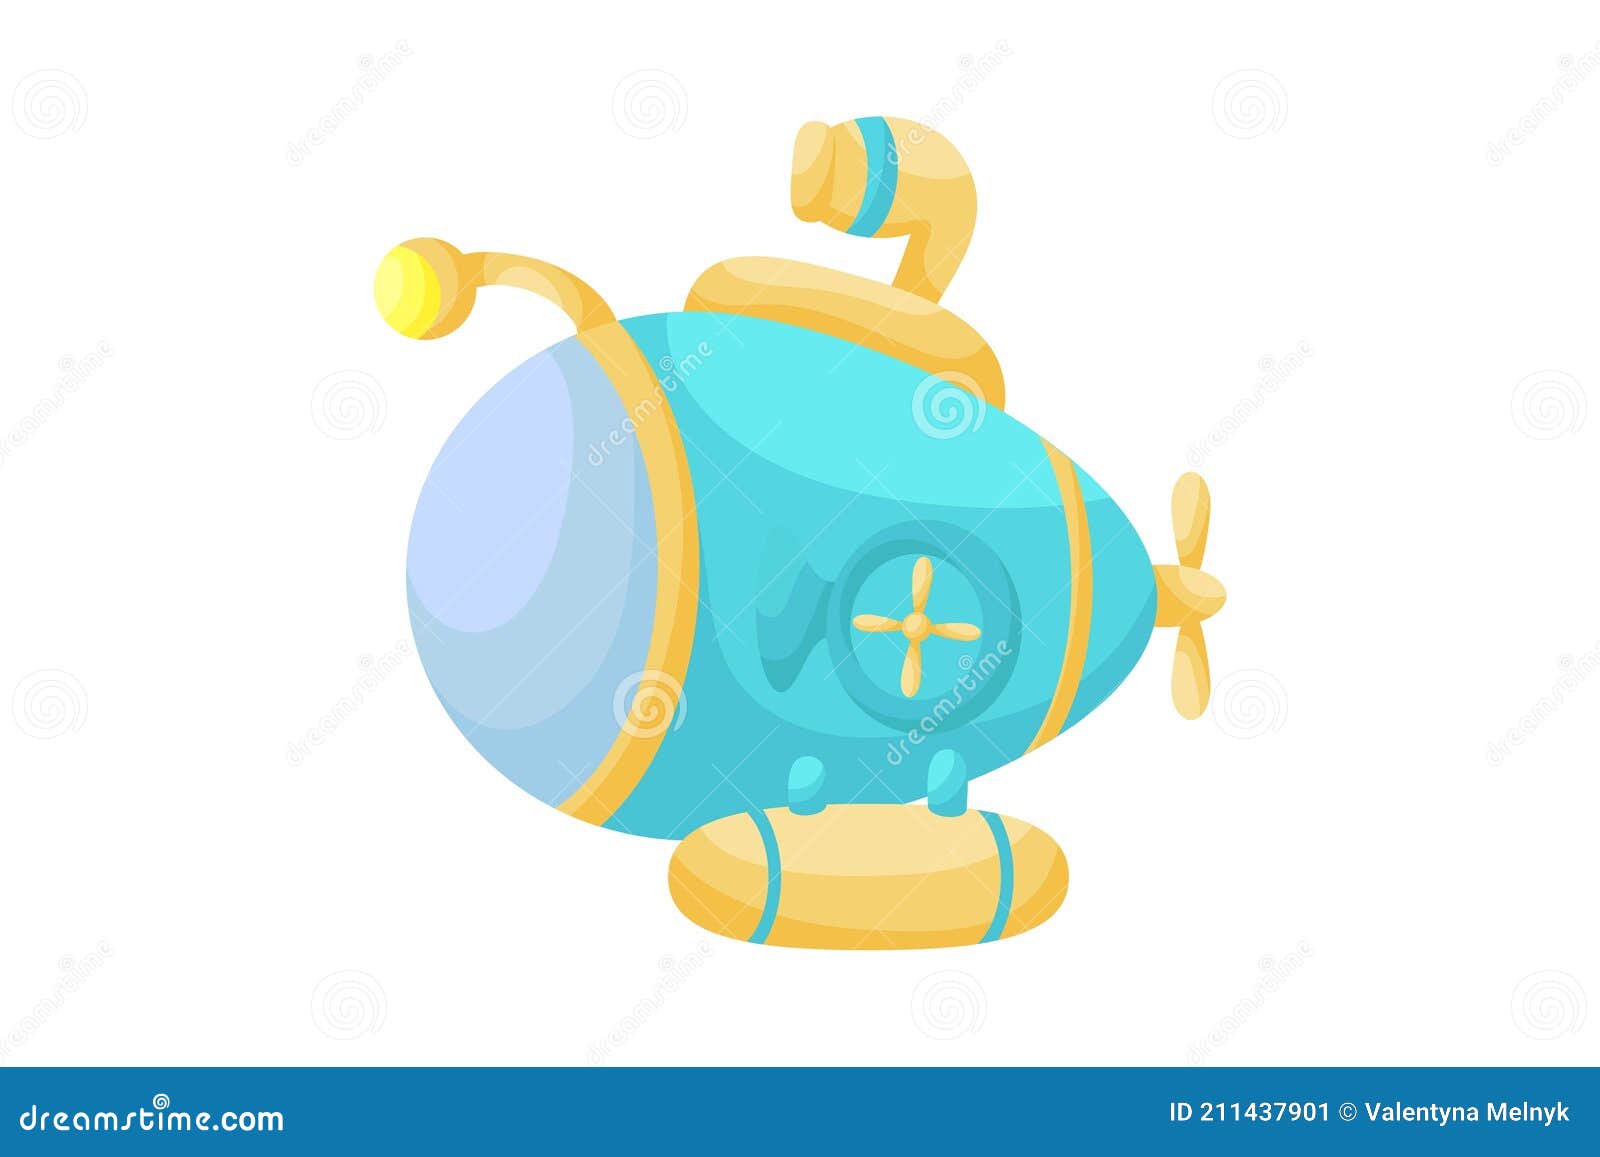 submarino ou desenho animado batiscafo com periscópio 22418893